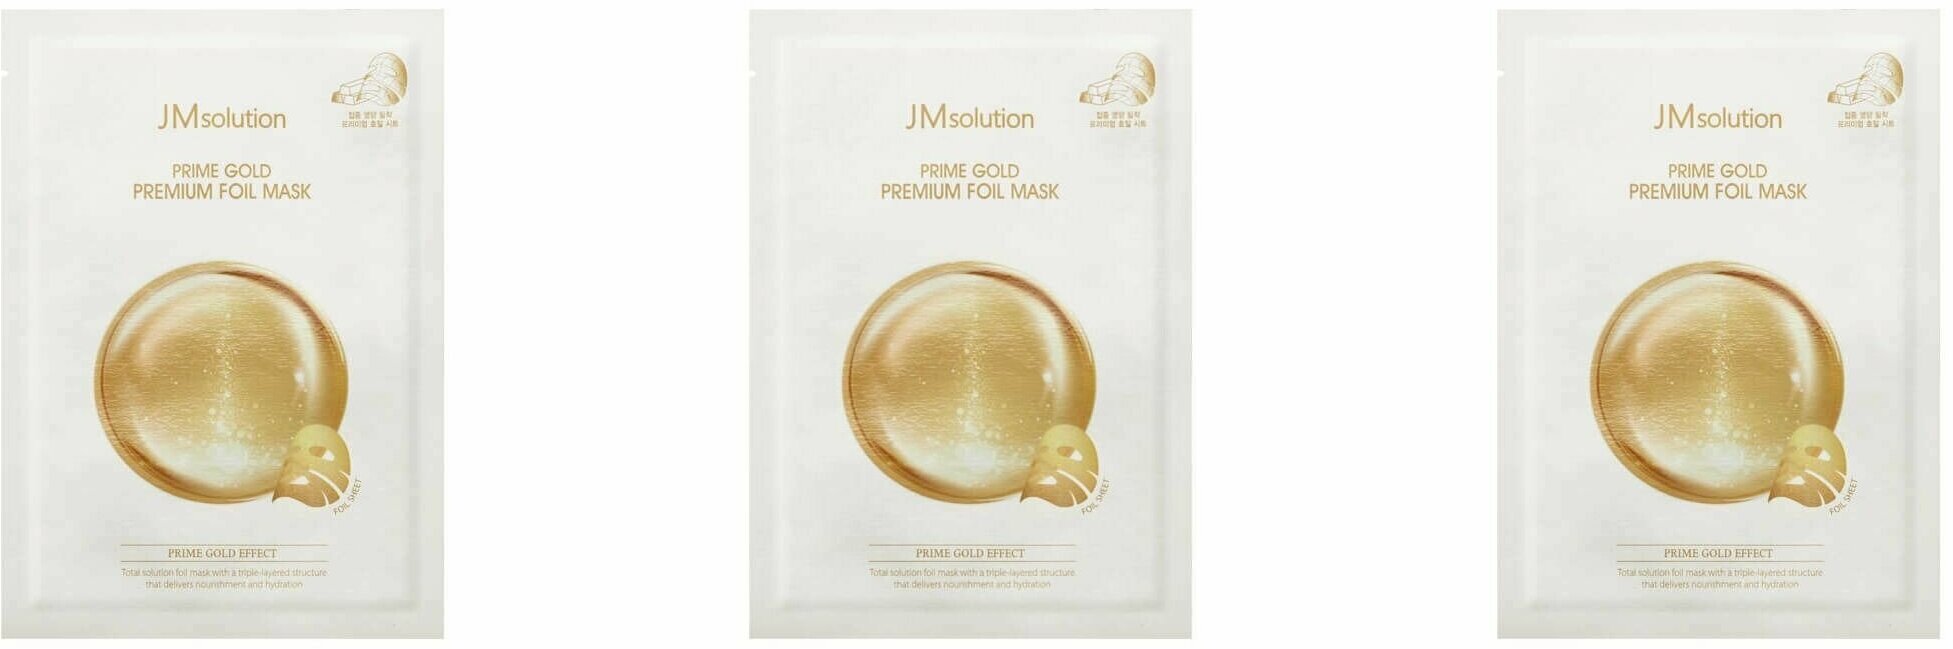 Jmsolution Маска для лица Трехслойная увлажняющая с коллоидным золотом Prime Gold Premium Foil Mask, 35 мл, 3 шт